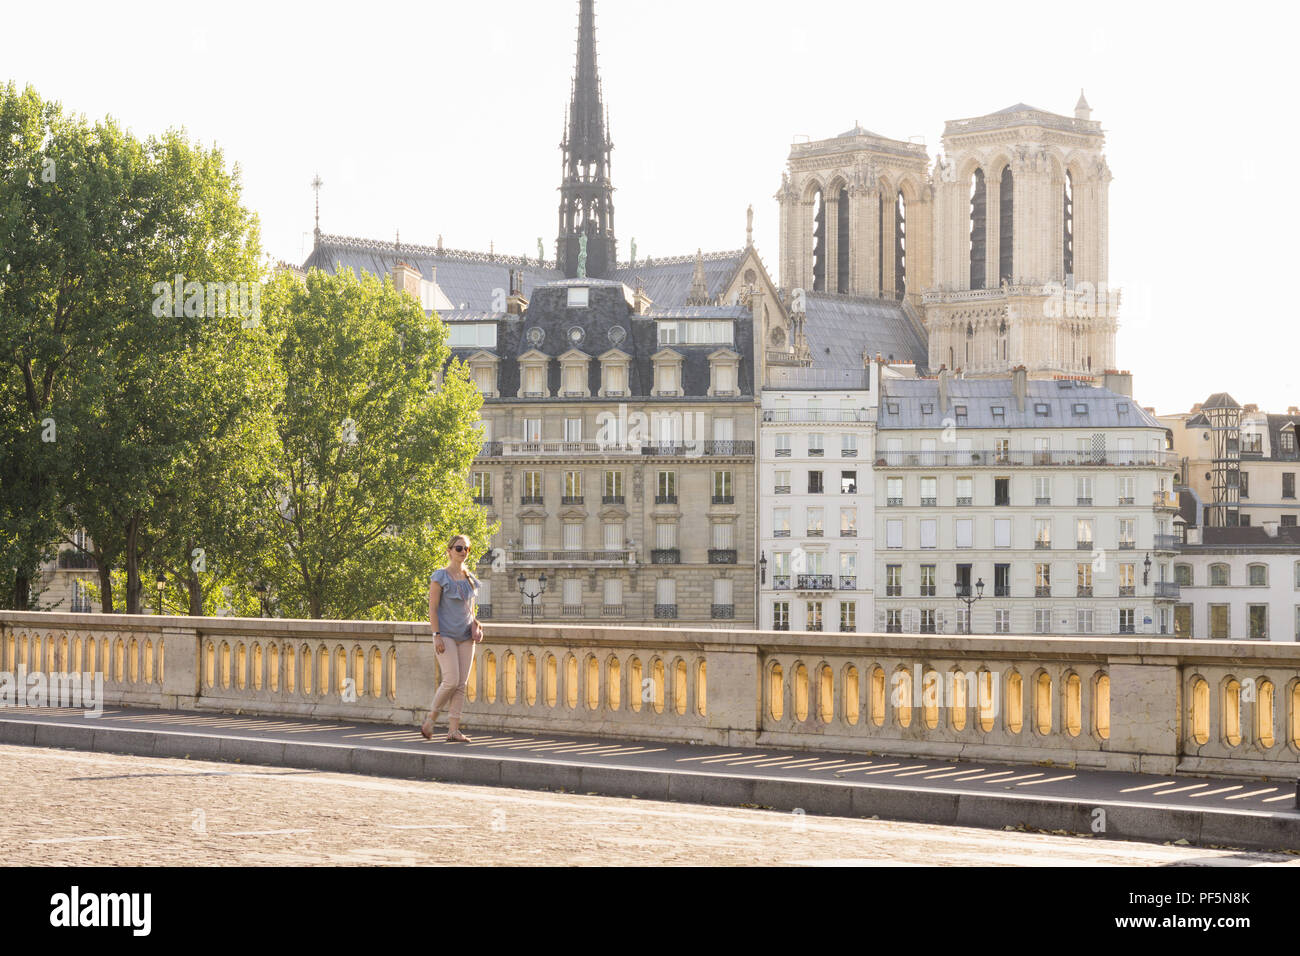 Paris Stadtbild - Frau Spaziergänge entlang der Louis Philippe Brücke an einem späten Nachmittag in Paris. Die Kathedrale Notre Dame befindet sich im Hintergrund. Frankreich, Europa. Stockfoto